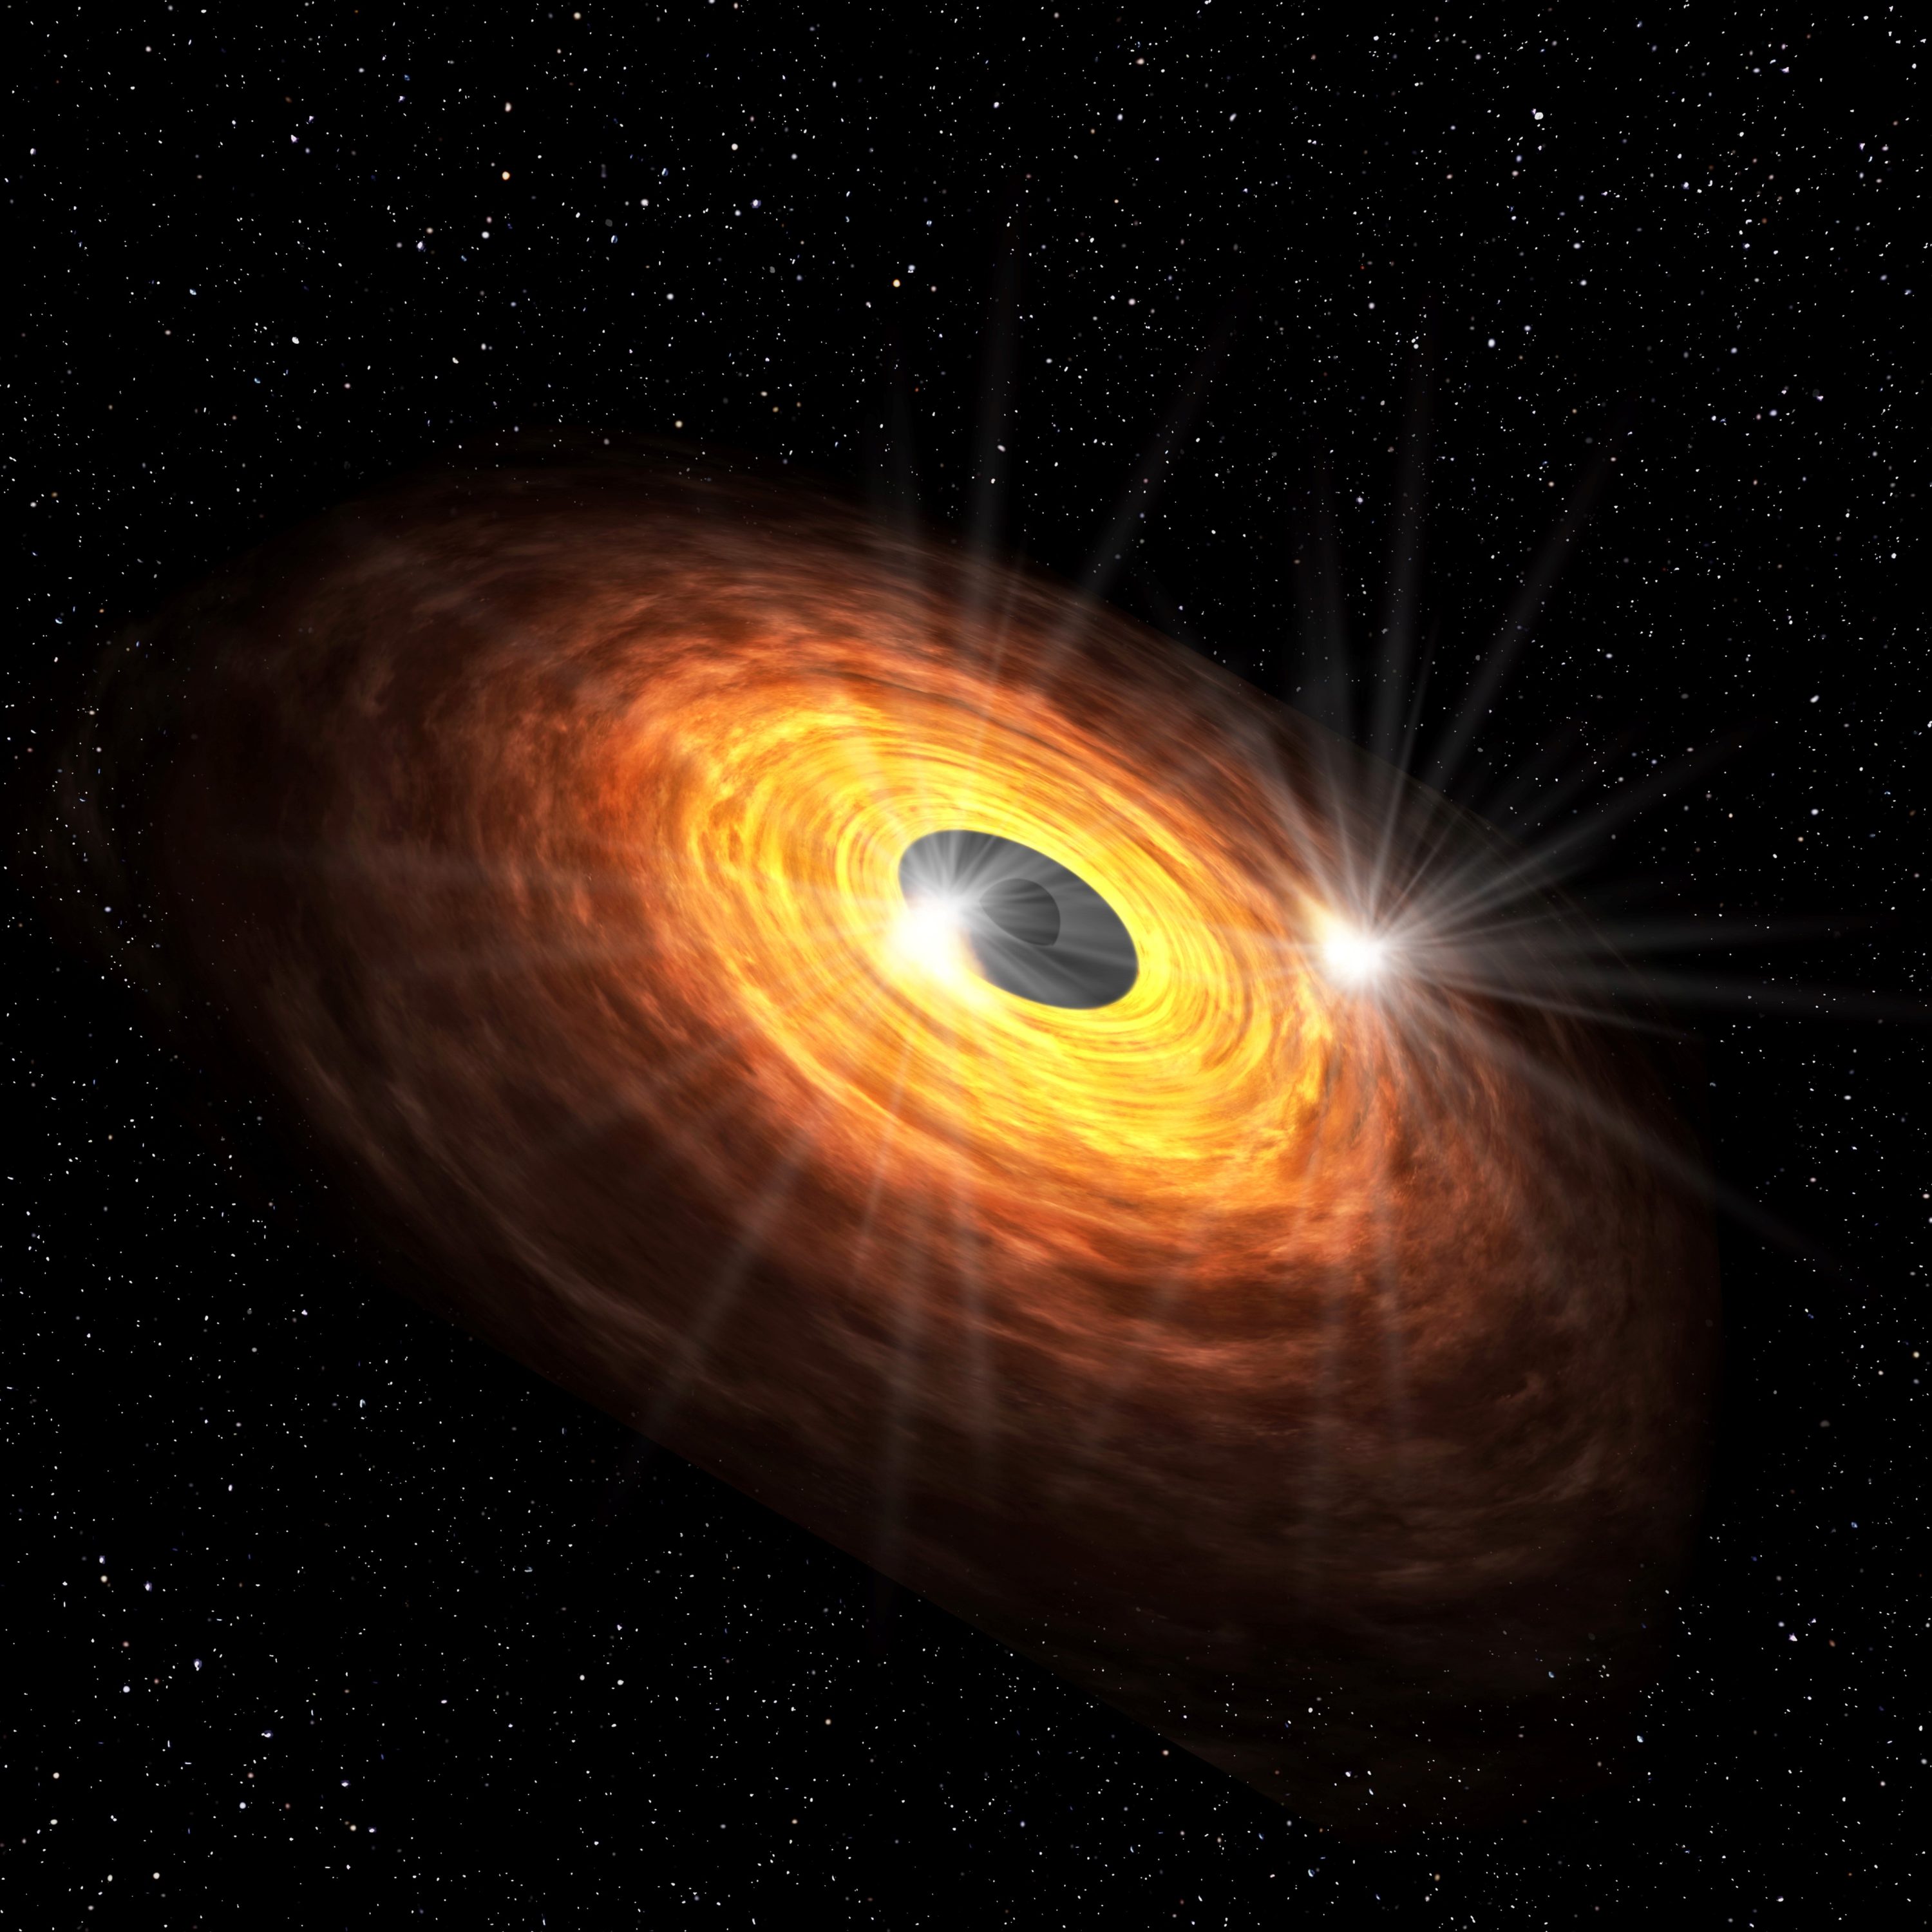 Representación artística del disco de gas que rodea el agujero negro supermasivo. Los puntos calientes que giran alrededor del agujero negro podrían ser el origen de las emisiones milimétricas cuasiperiódicas detectadas por ALMA. Crédito: Universidad Keio